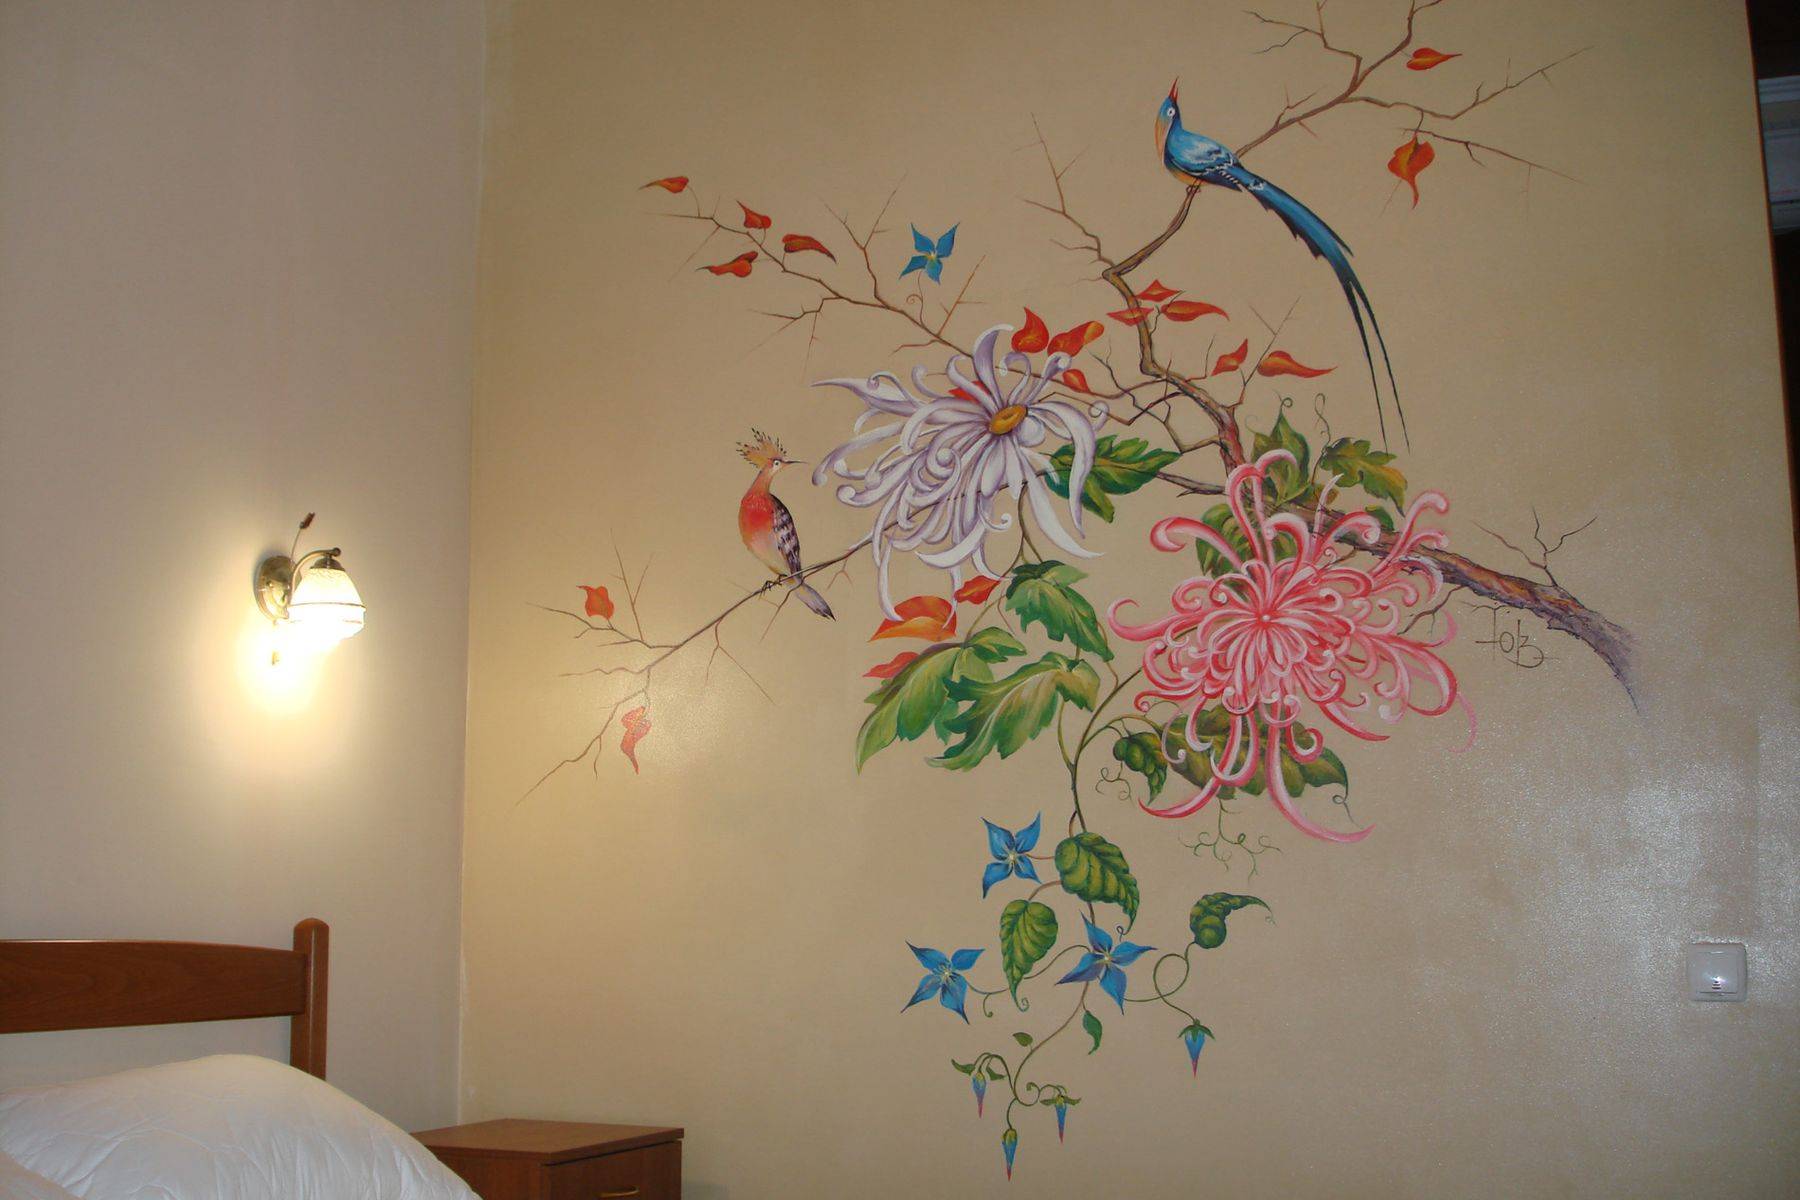 Роспись стен в интерьере квартиры, различные техники. фото